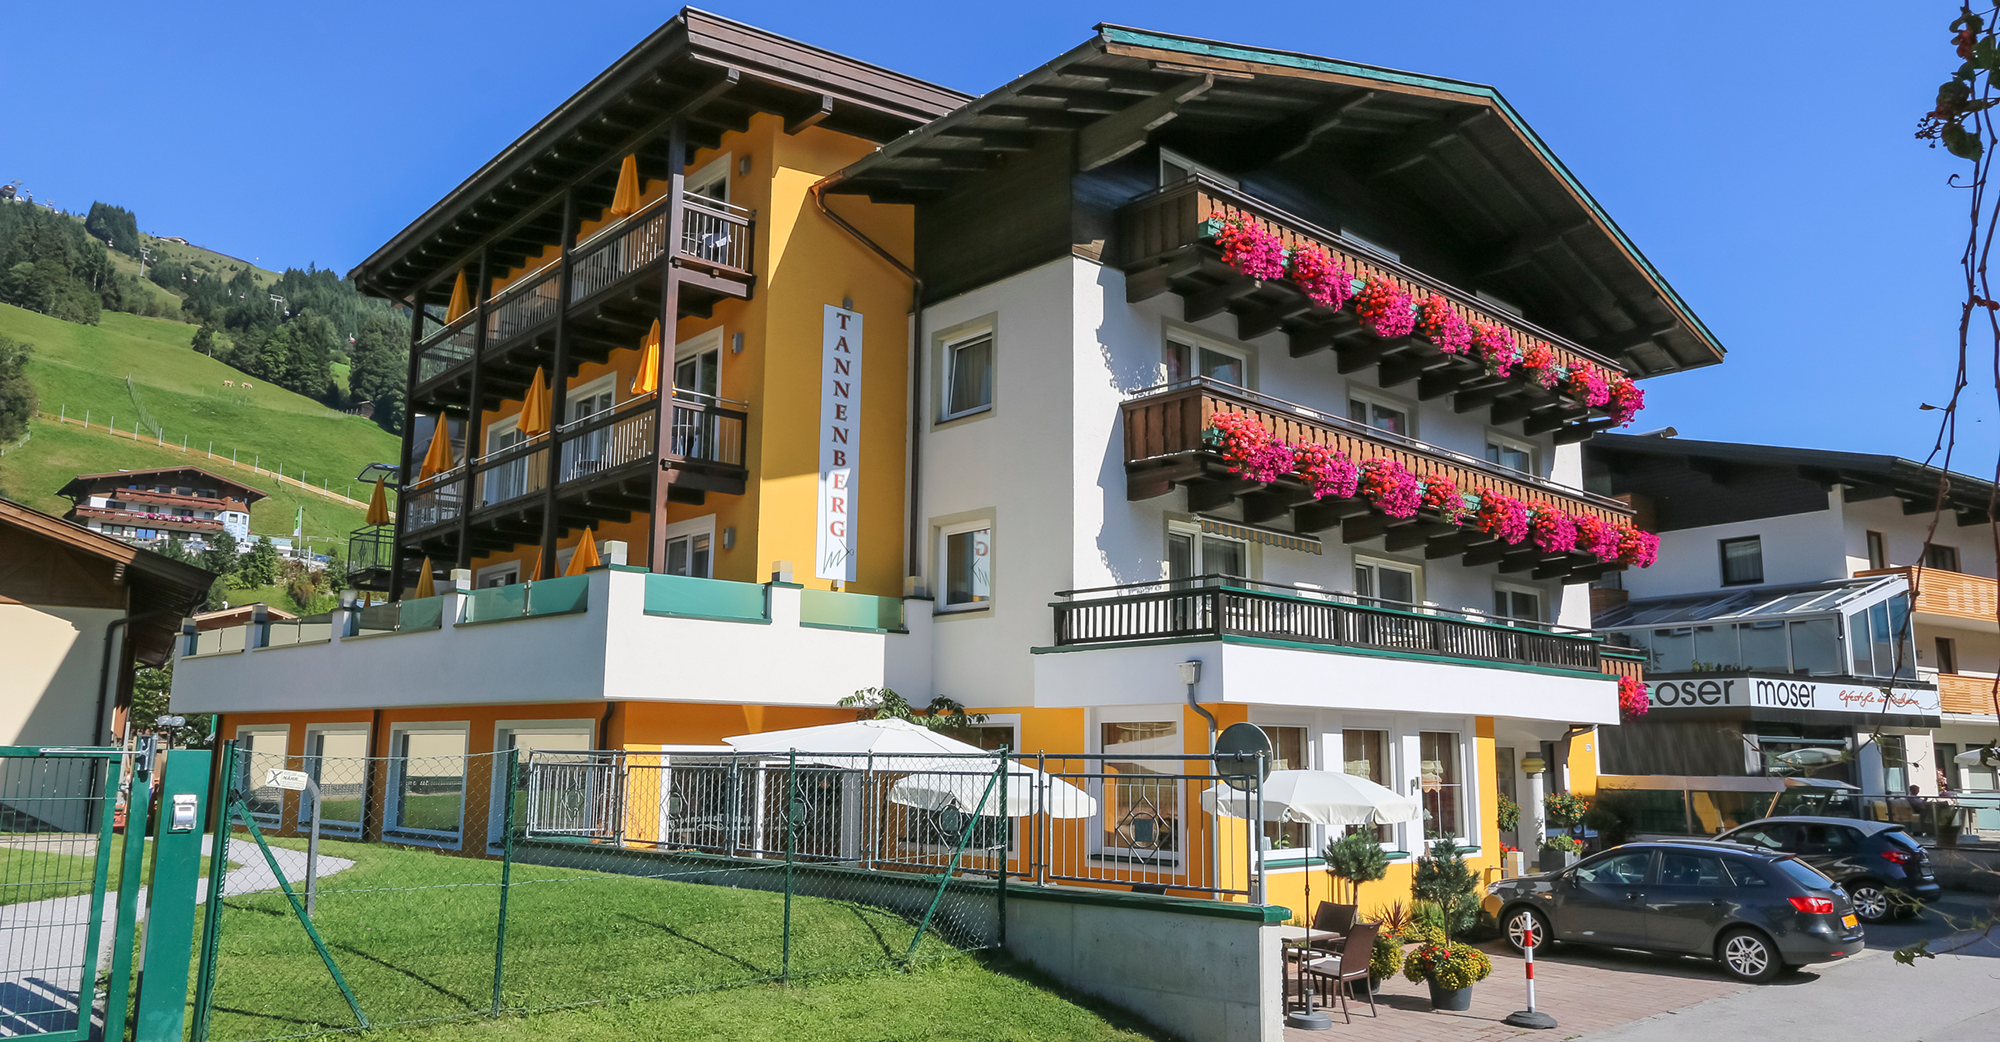 Willkommen im Hotel TannenbergIhr Sporthotel in Saalbach